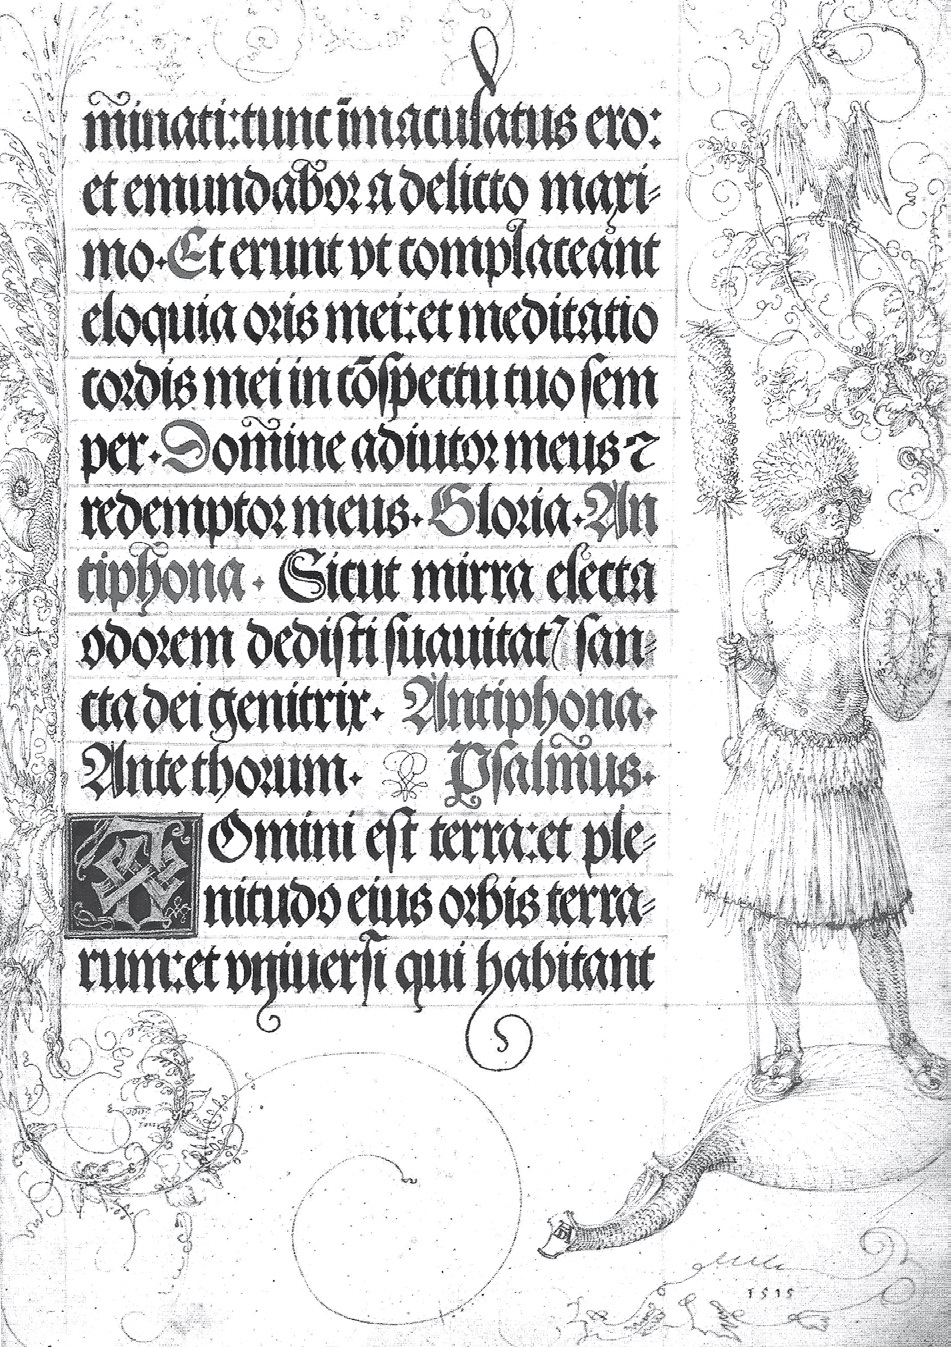 Albert Durero, “Libro de oraciones de  Maximilian I”, fol. 41 recto. Bayerische Staatsbibliothek, München.